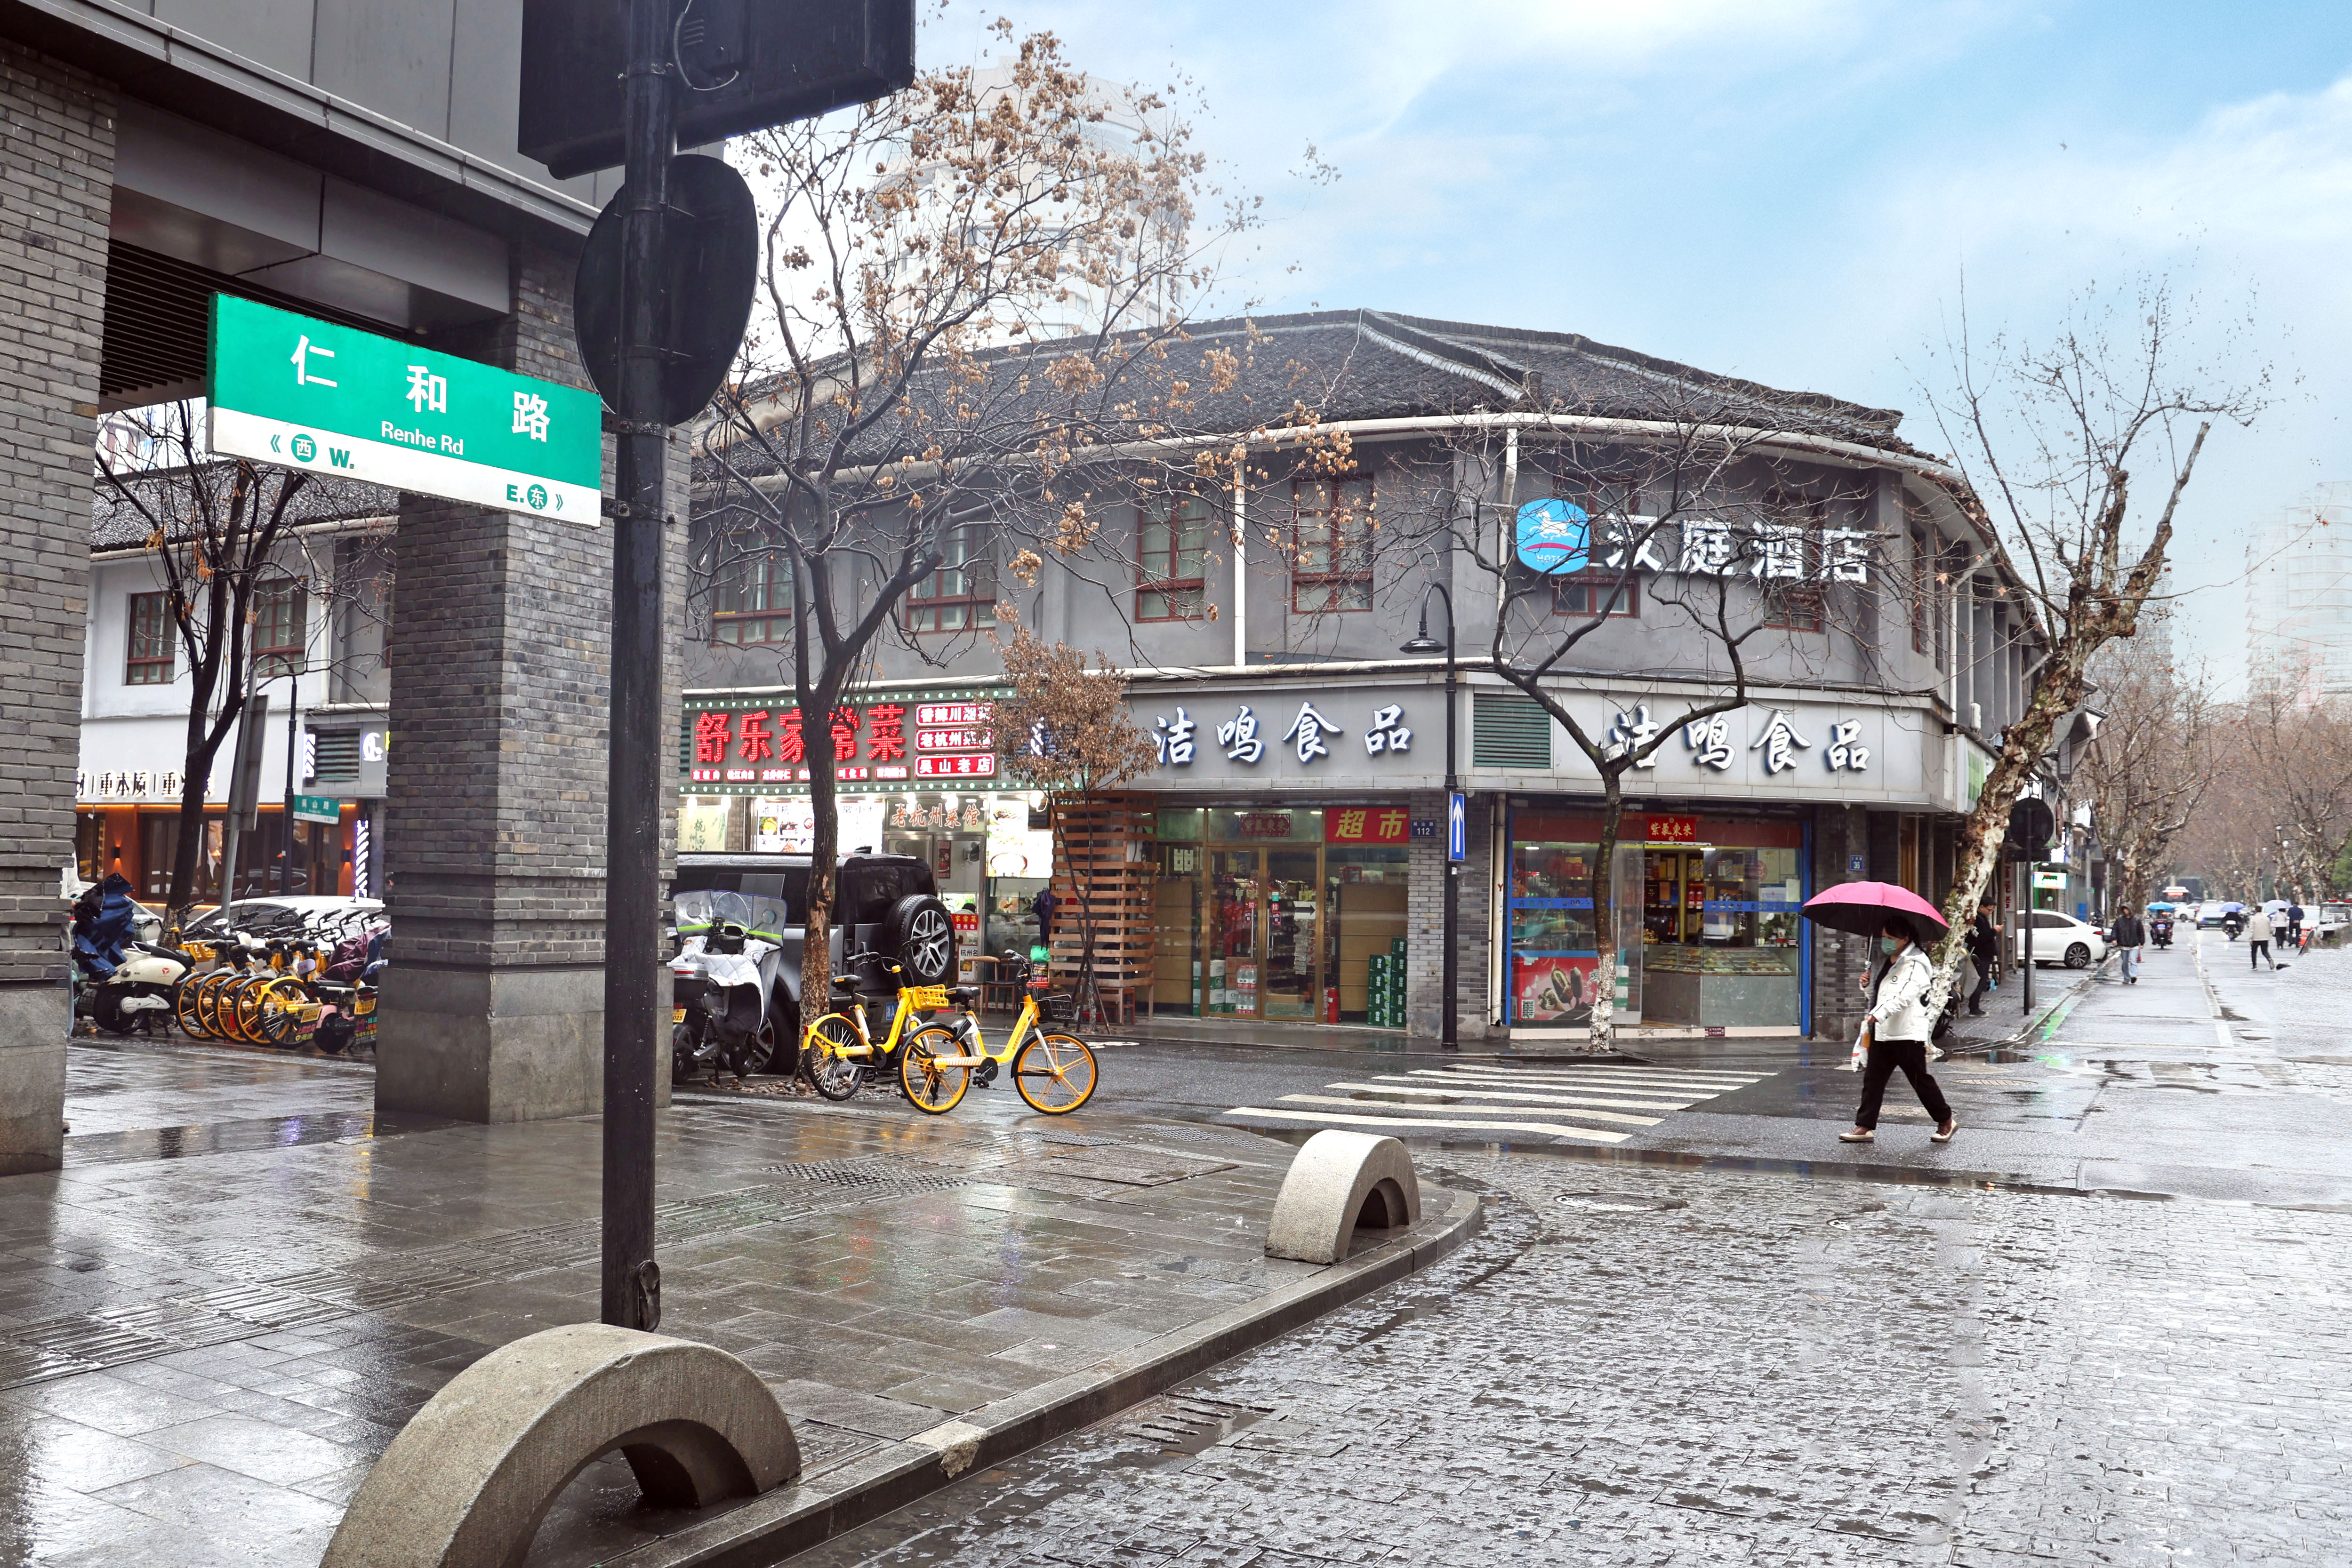 仁和路，一条见证杭州繁华的历史长街